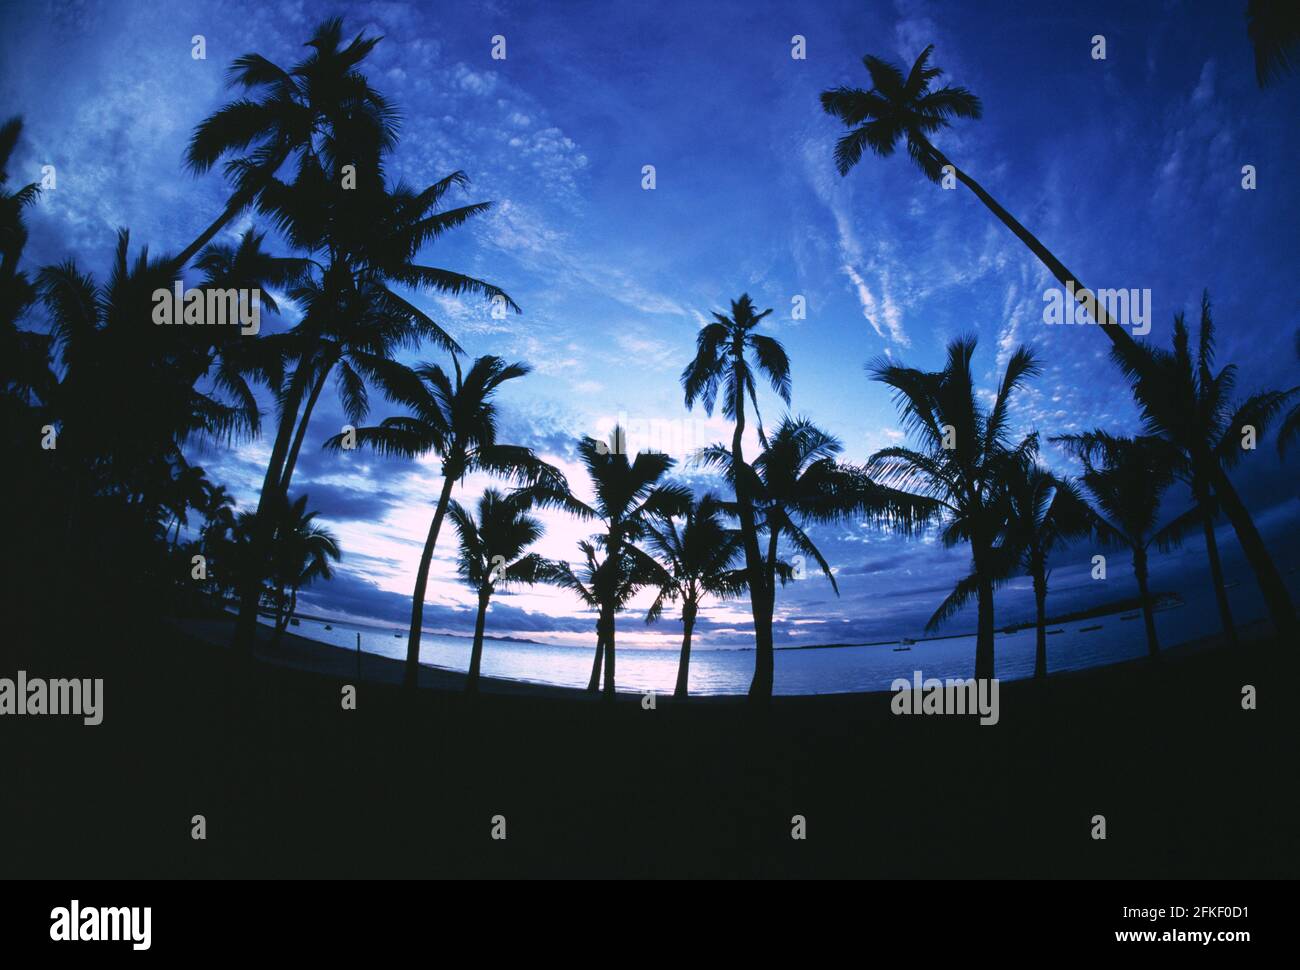 Figi. Spiaggia con palme di cocco silhouette contro il cielo serale. Foto Stock